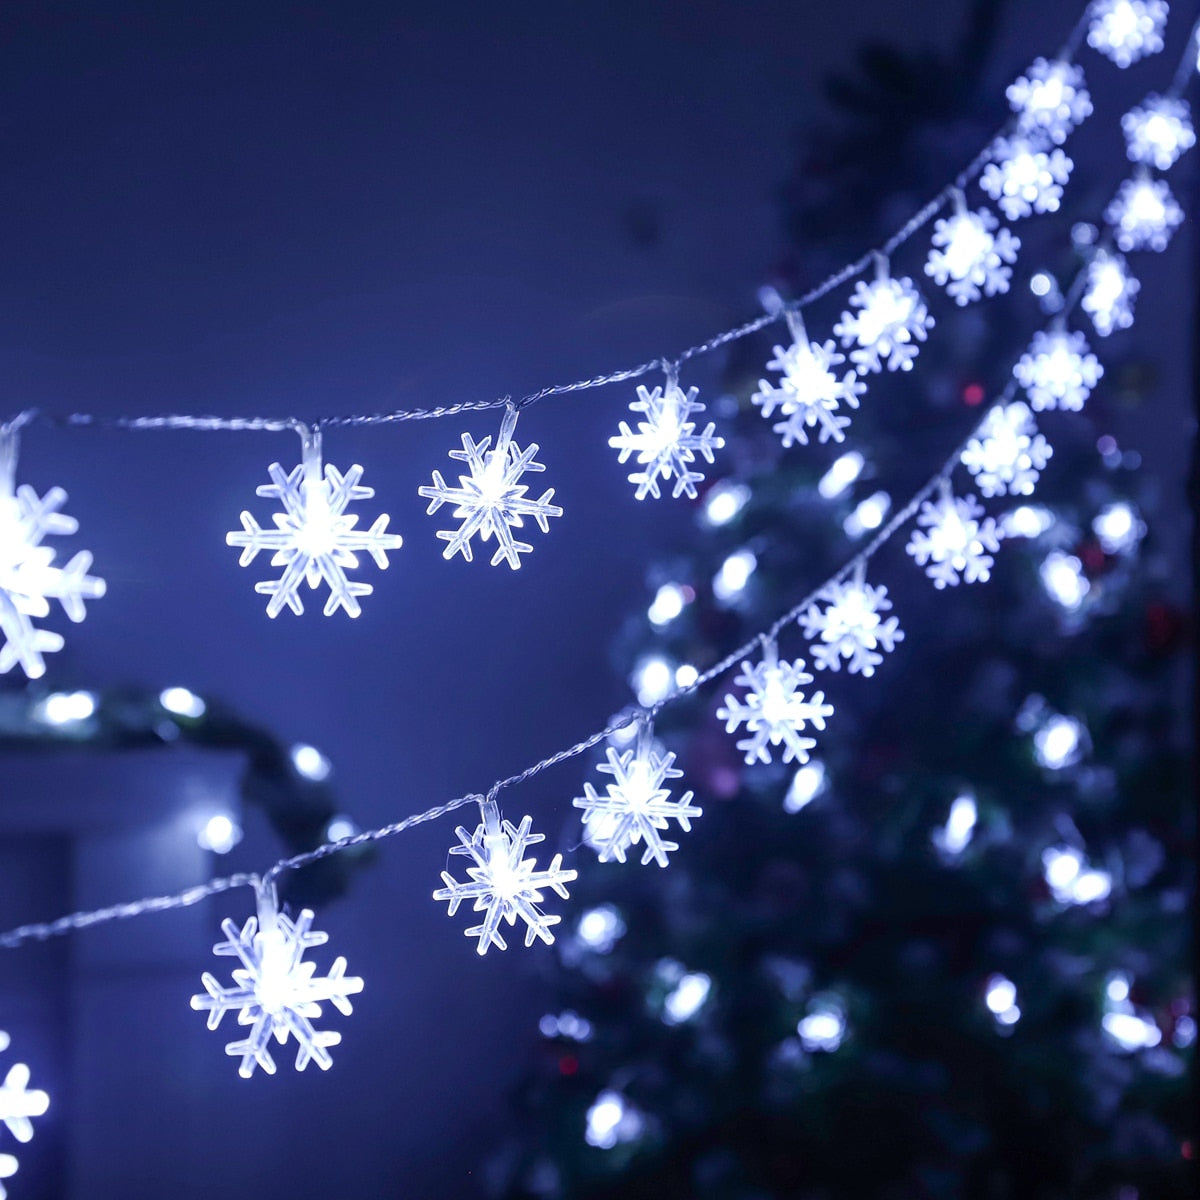 Snowflake LED Light Christmas Decor